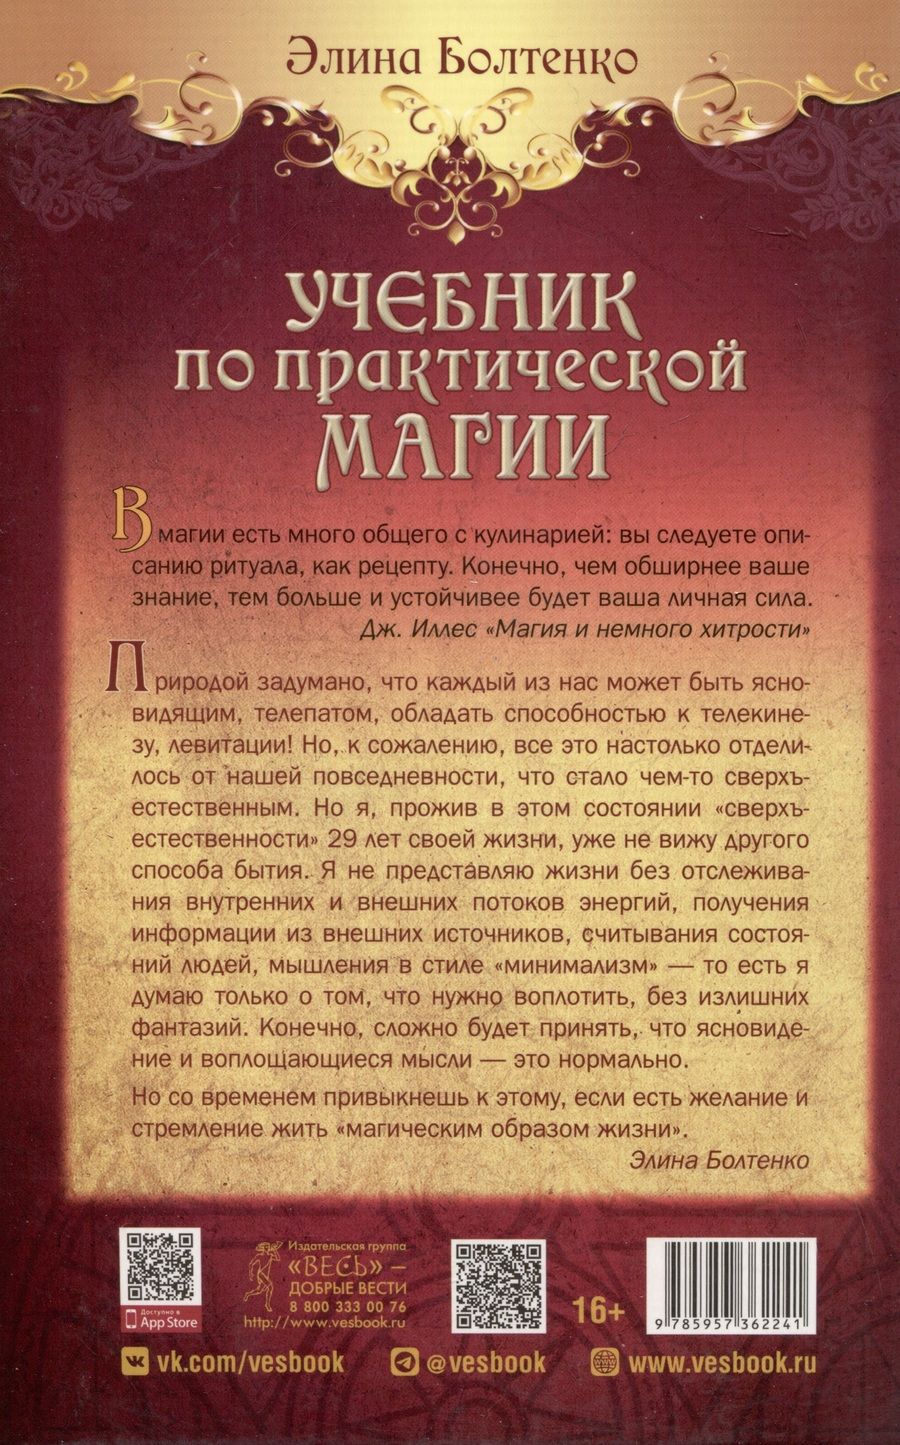 Обложка книги "Элина Болтенко: Учебник по практической магии. Часть 2"